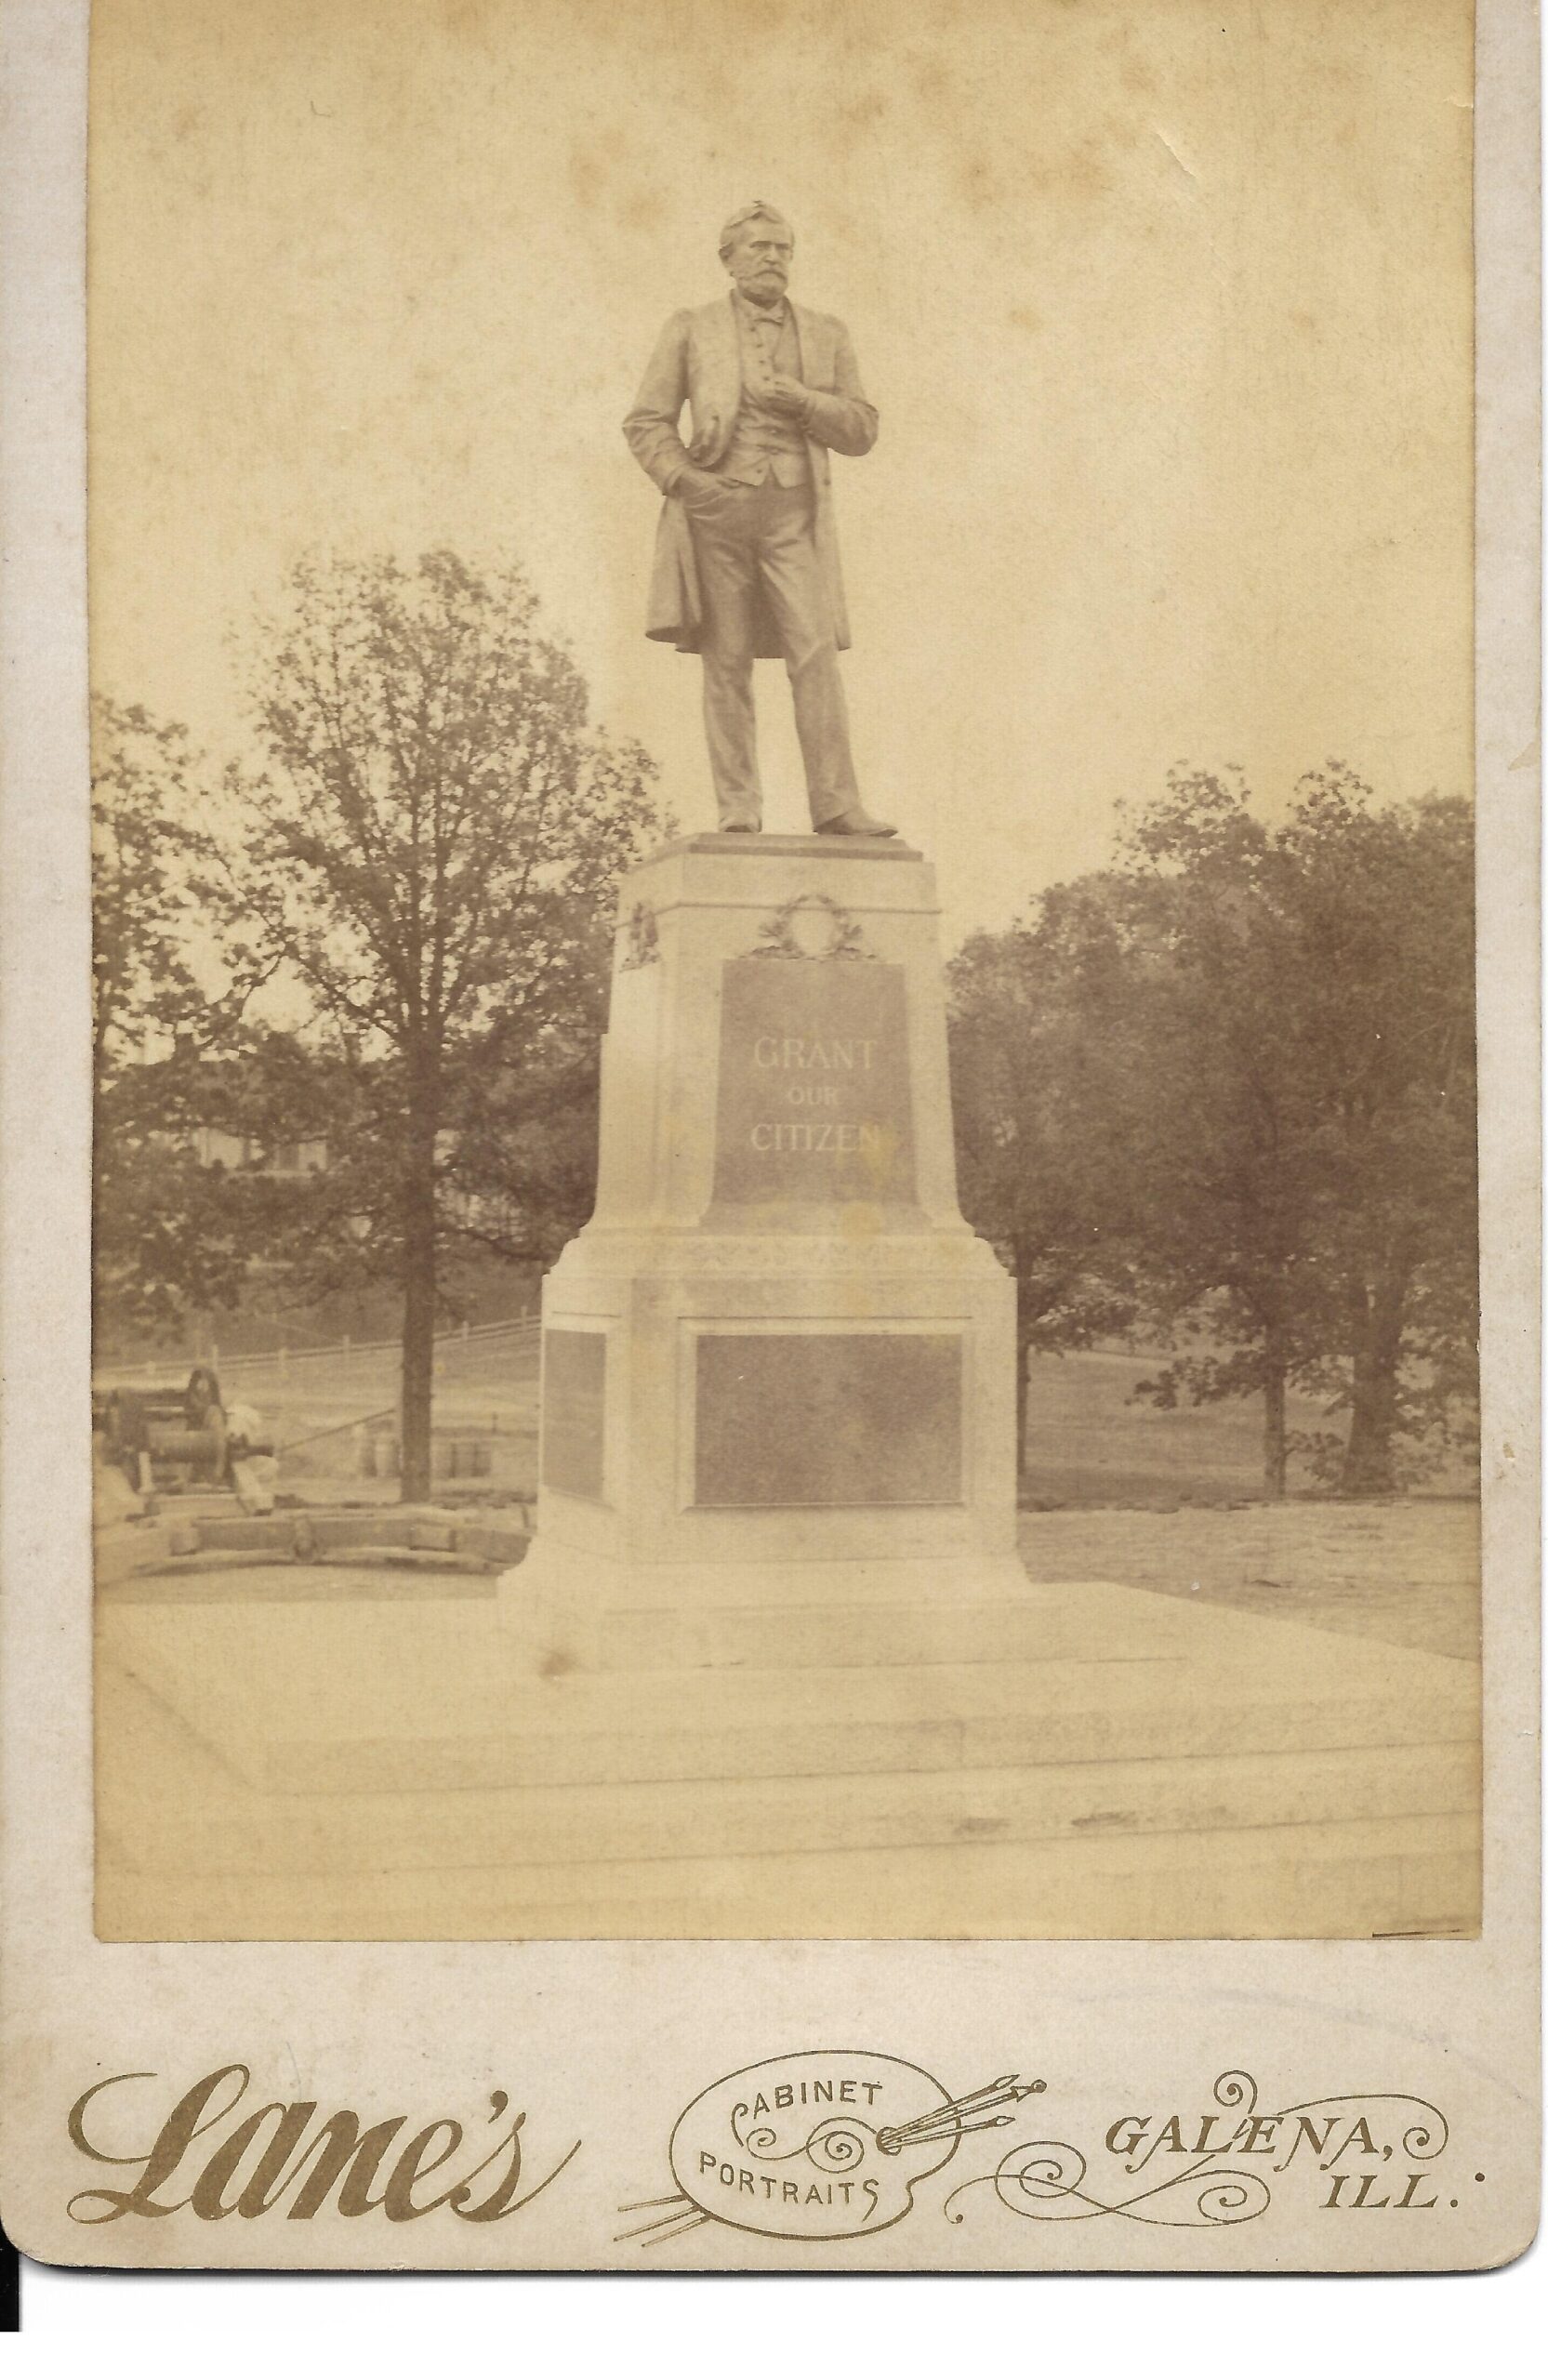 Grant statue in Galena